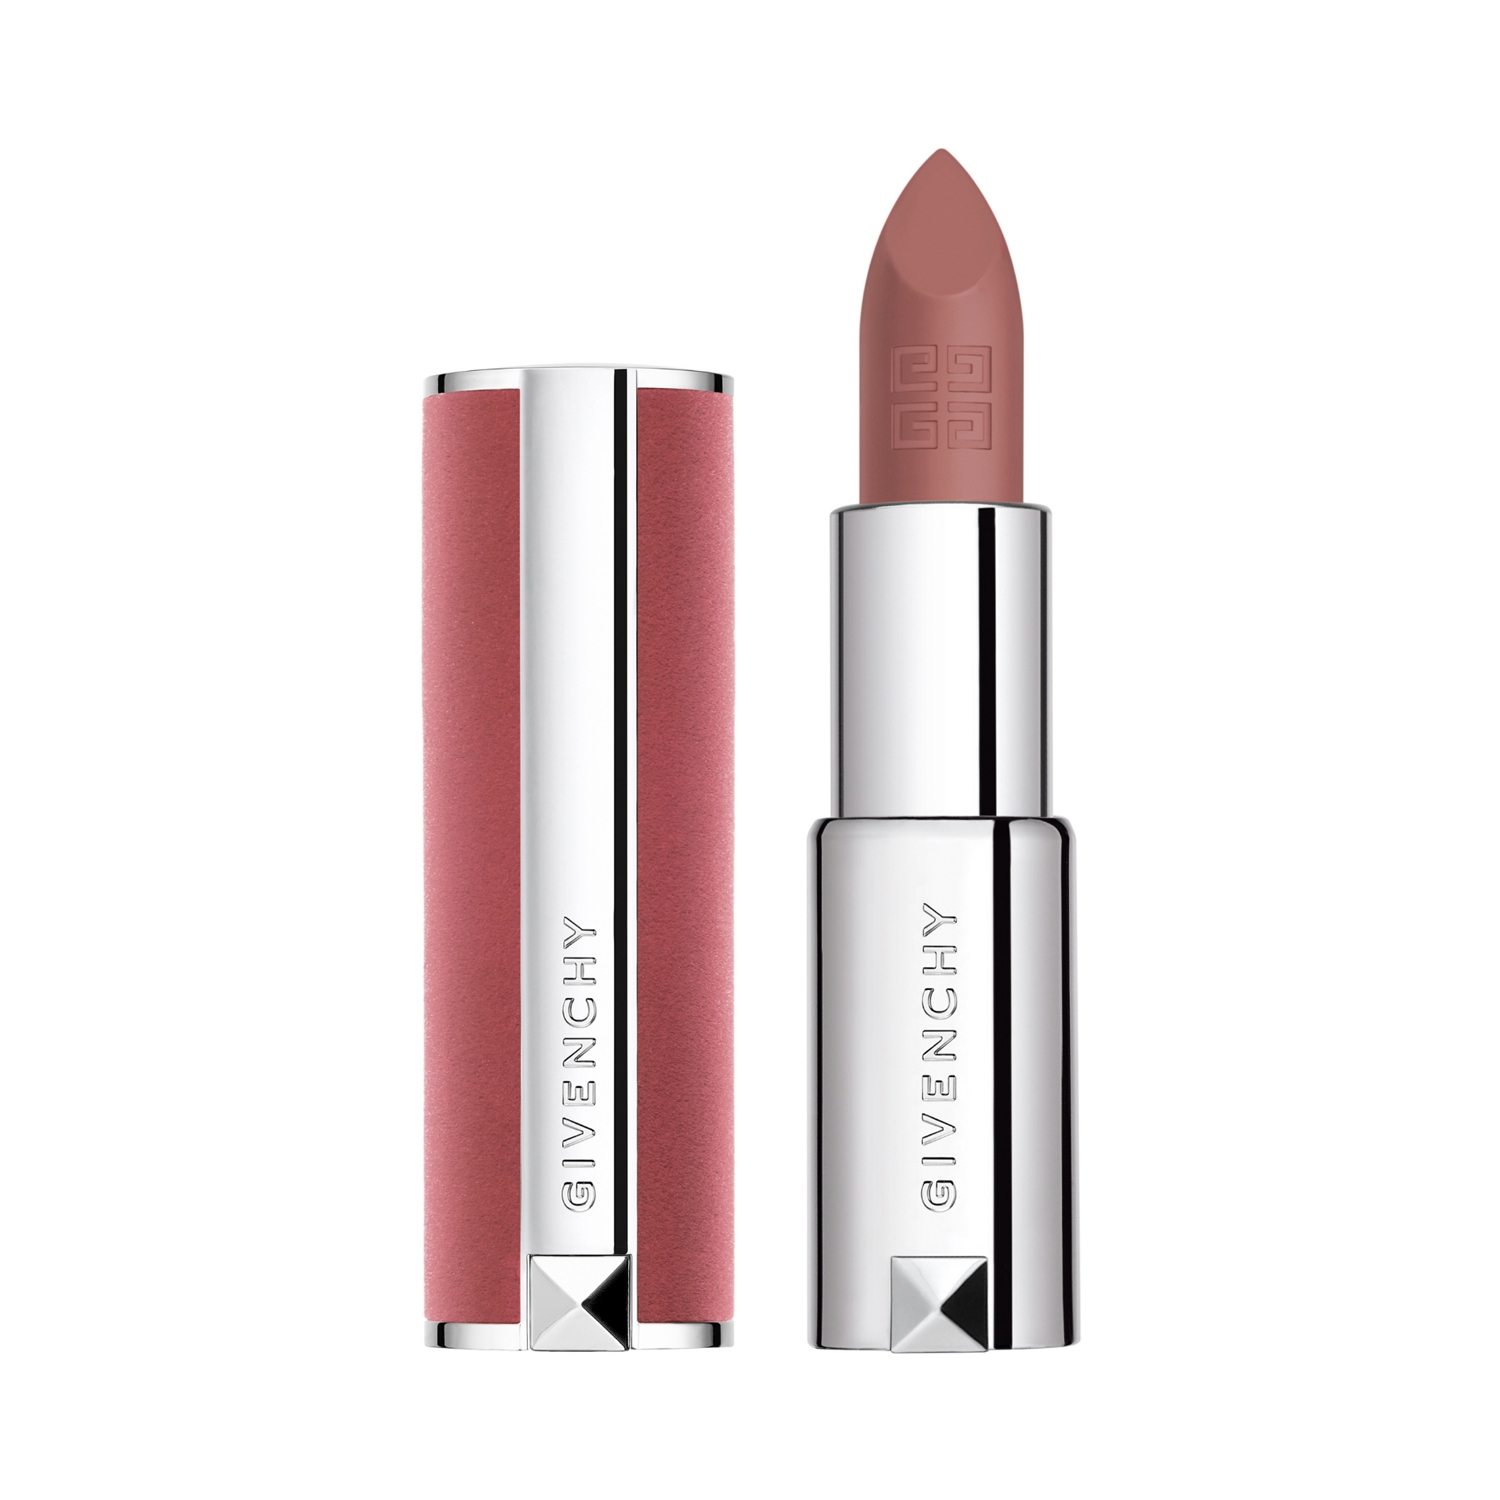 Givenchy | Givenchy Le Rouge Sheer Velvet Matte Lipstick - N 10 Beige Nu (3.4g)